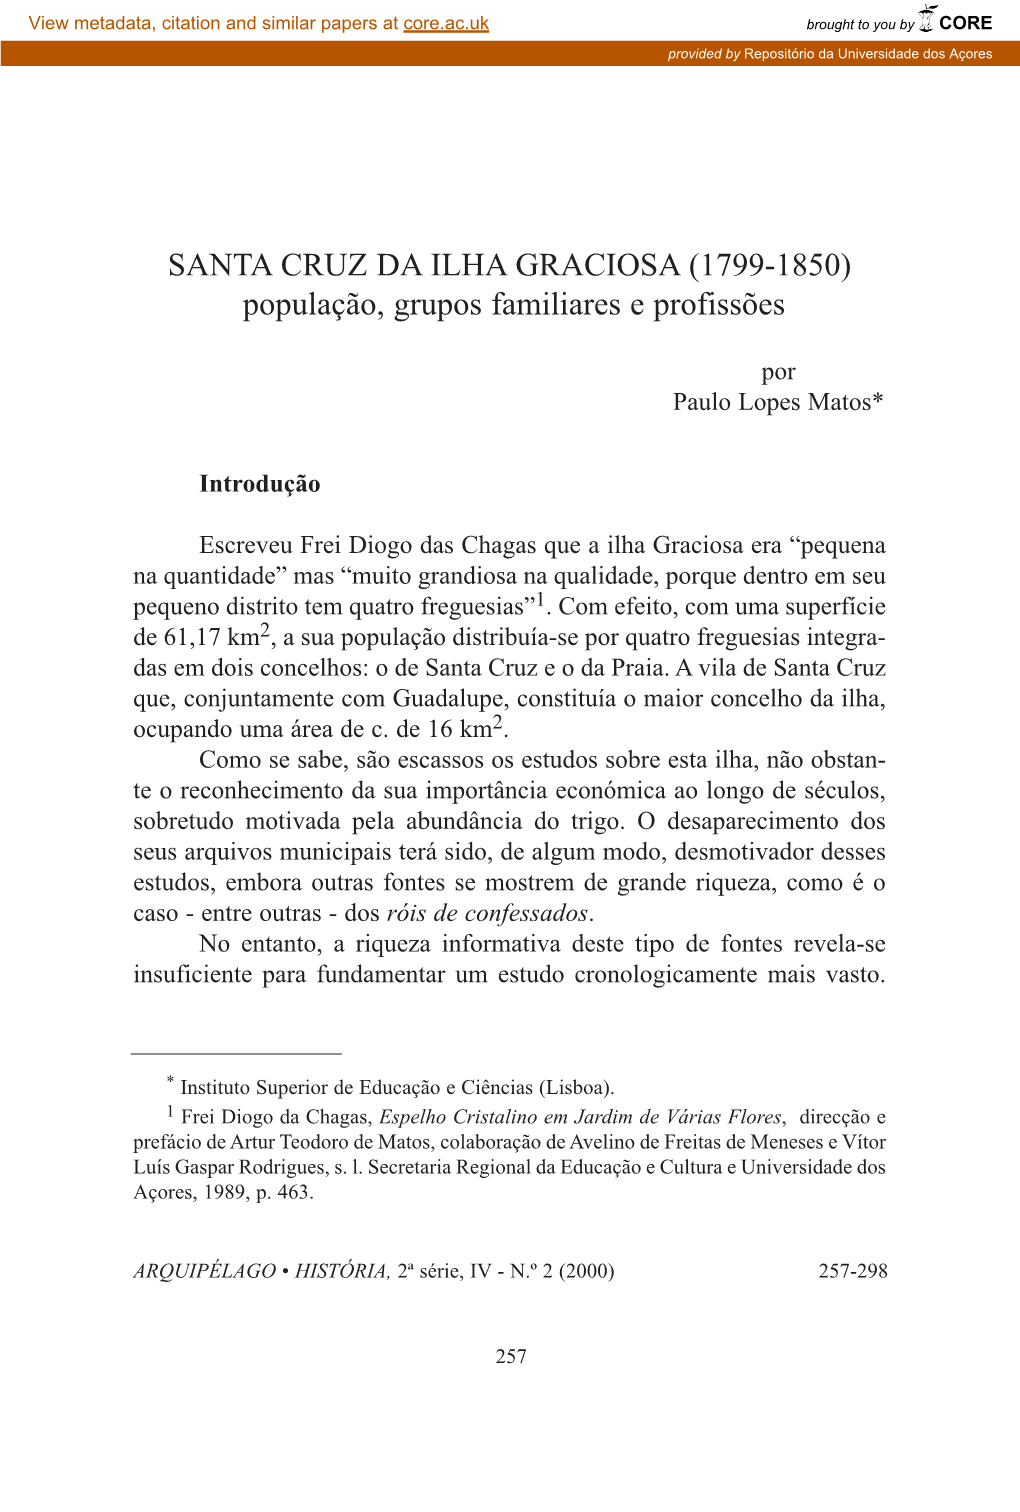 SANTA CRUZ DA ILHA GRACIOSA (1799-1850) População, Grupos Familiares E Profissões